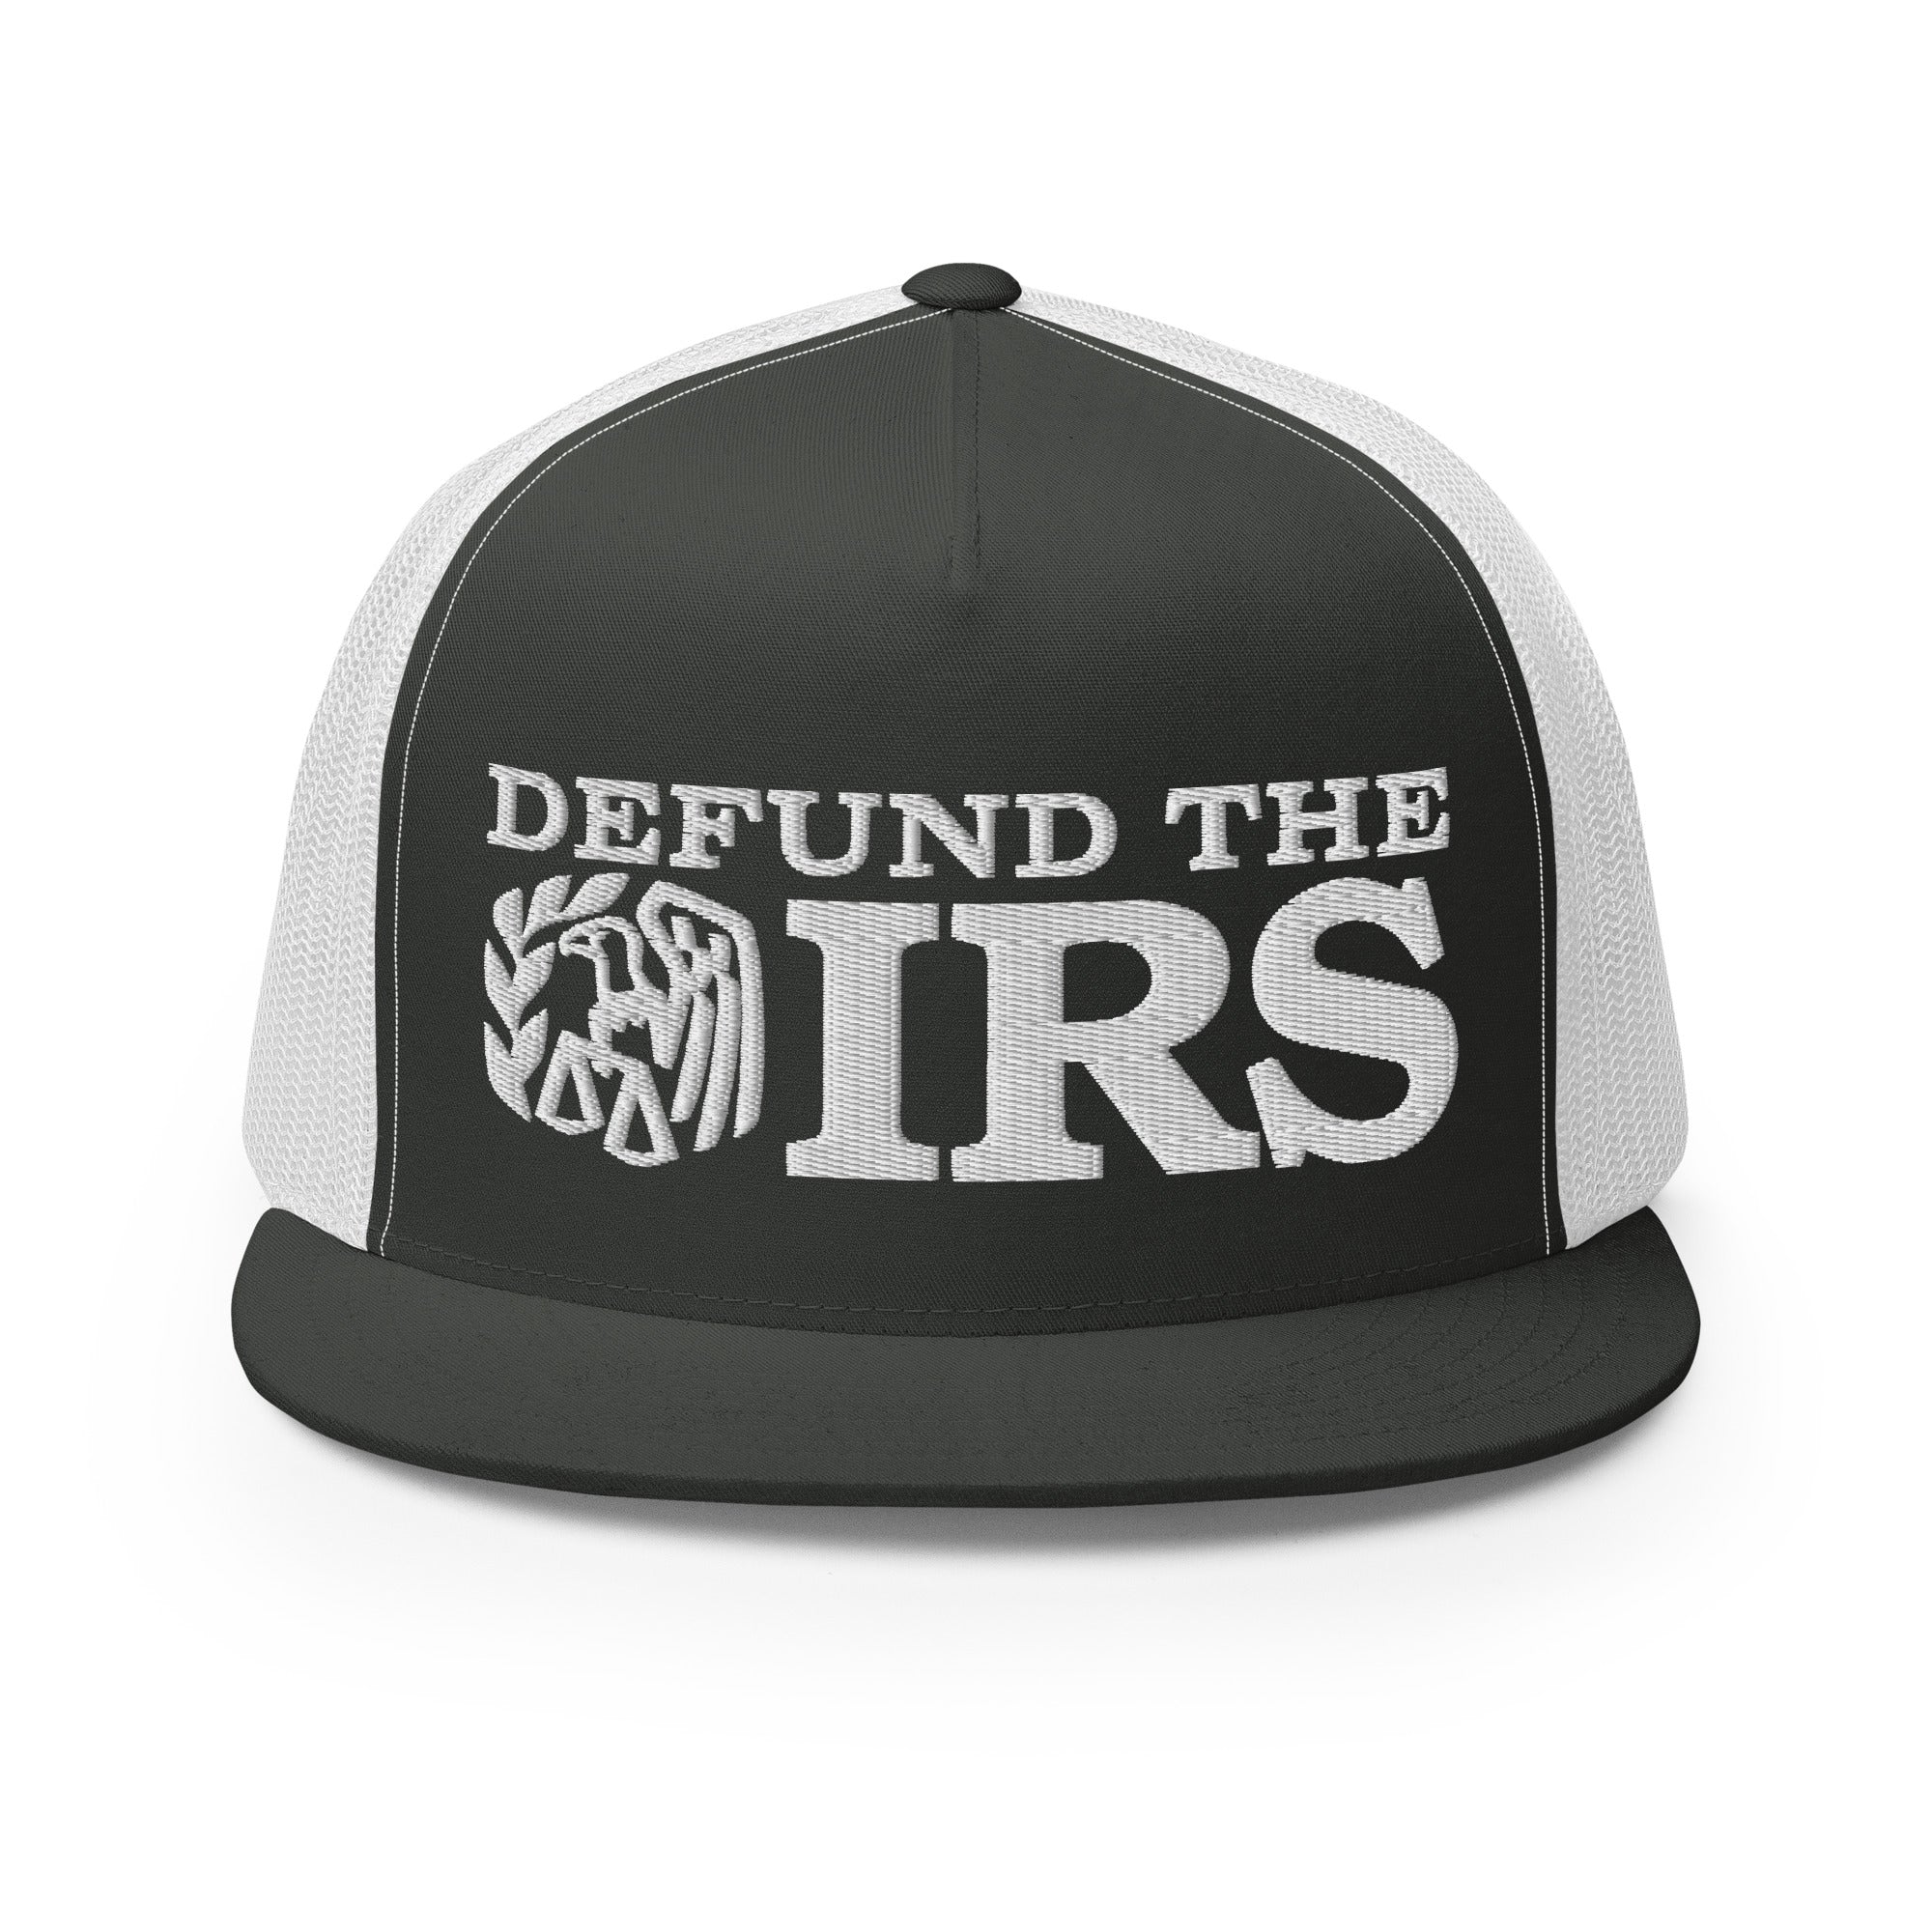 Defund the IRS Trucker Cap